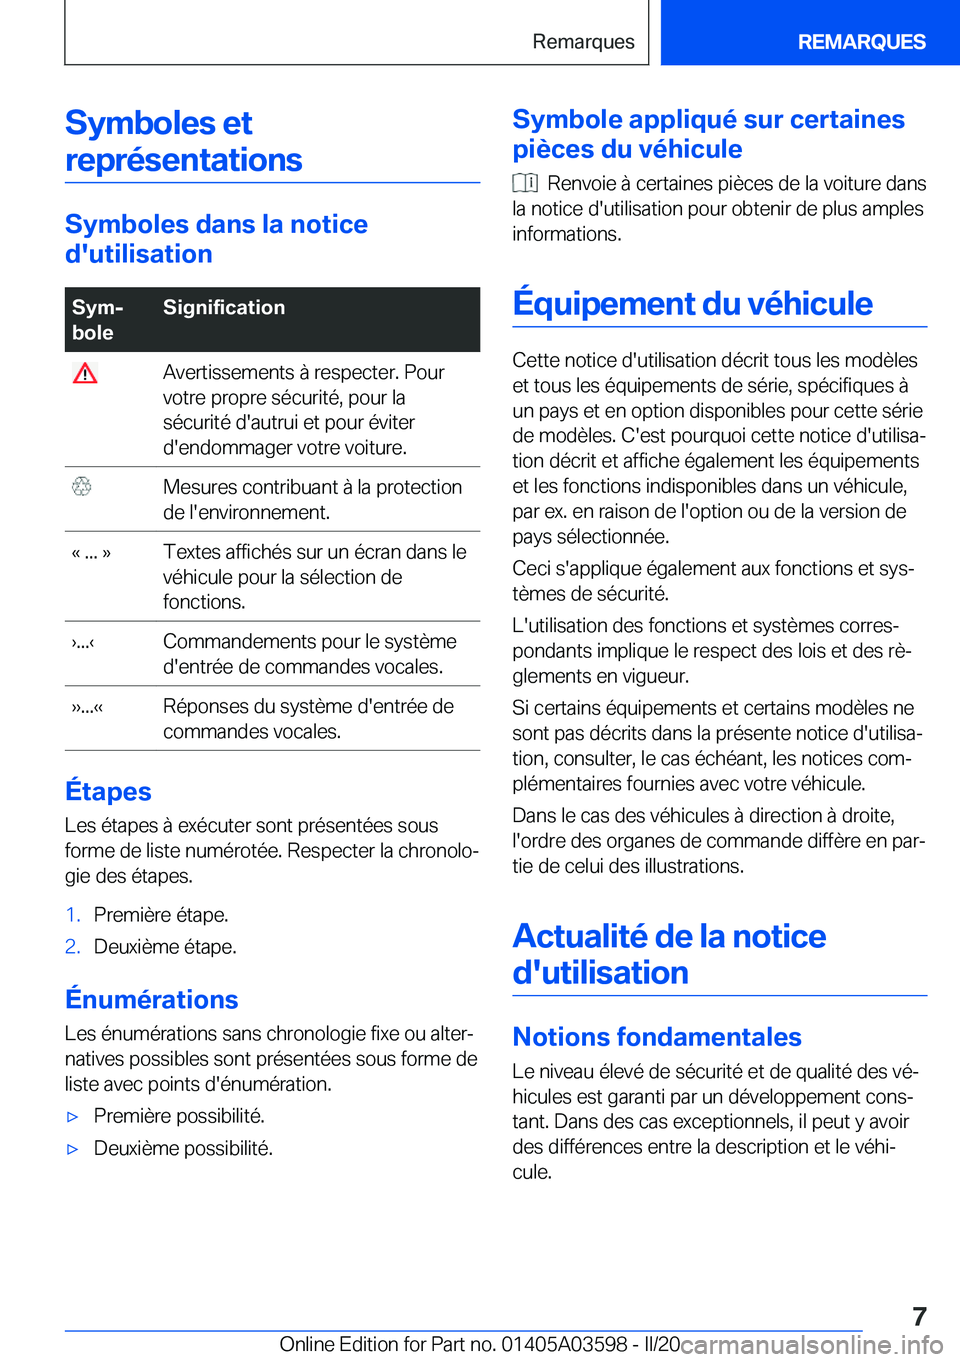 BMW X4 2020  Notices Demploi (in French) �S�y�m�b�o�l�e�s��e�t�r�e�p�r�é�s�e�n�t�a�t�i�o�n�s
�S�y�m�b�o�l�e�s��d�a�n�s��l�a��n�o�t�i�c�e
�d�'�u�t�i�l�i�s�a�t�i�o�n
�S�y�mj
�b�o�l�e�S�i�g�n�i�f�i�c�a�t�i�o�n��A�v�e�r�t�i�s�s�e�m�e�